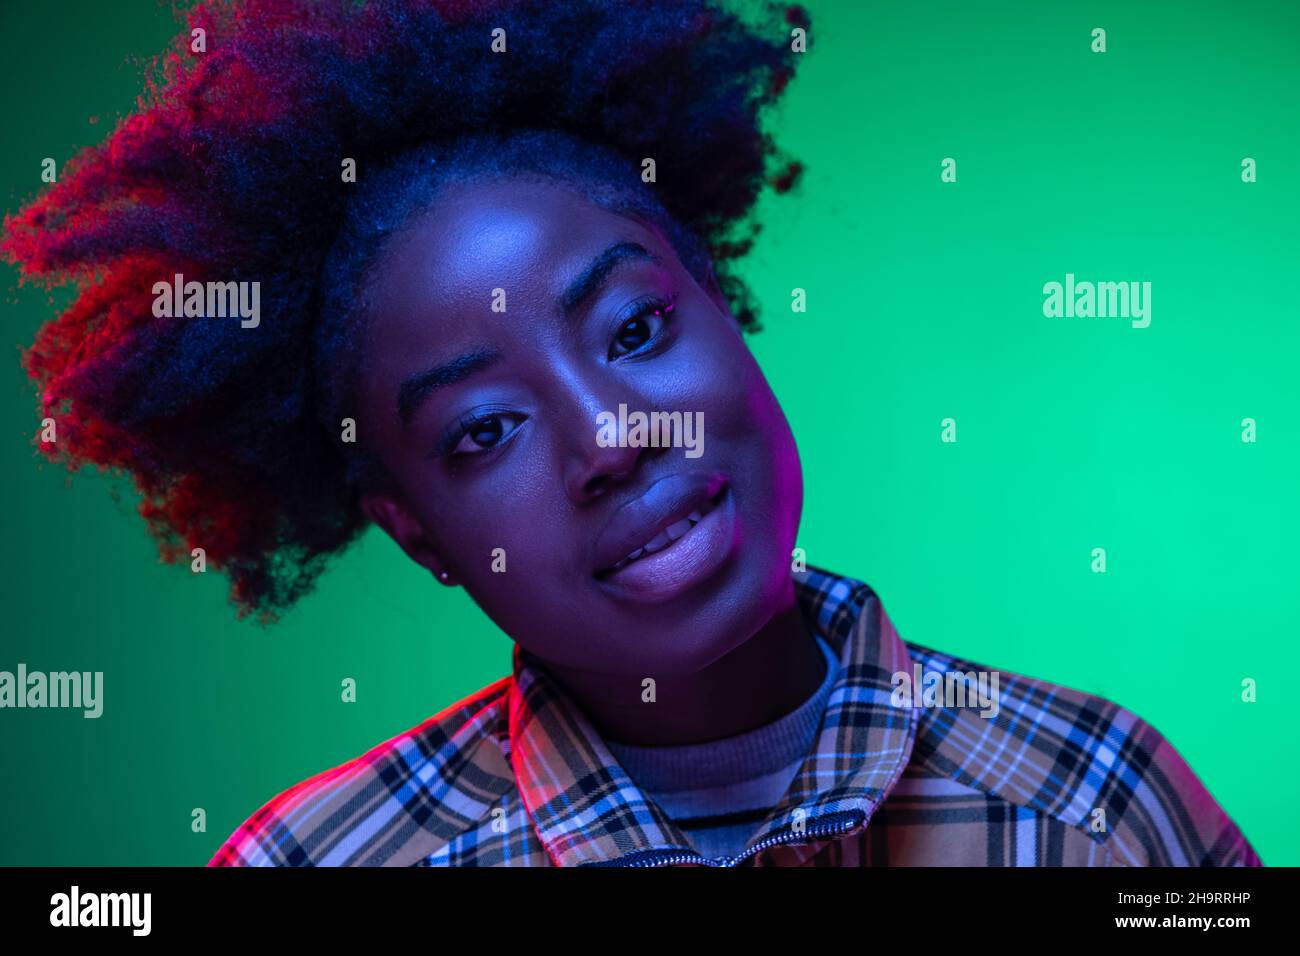 Gros plan sur le portrait d'une jeune fille africaine sur fond de studio vert foncé, dans une lumière de néon mauve.Hairdo afro.Concept des émotions humaines Banque D'Images